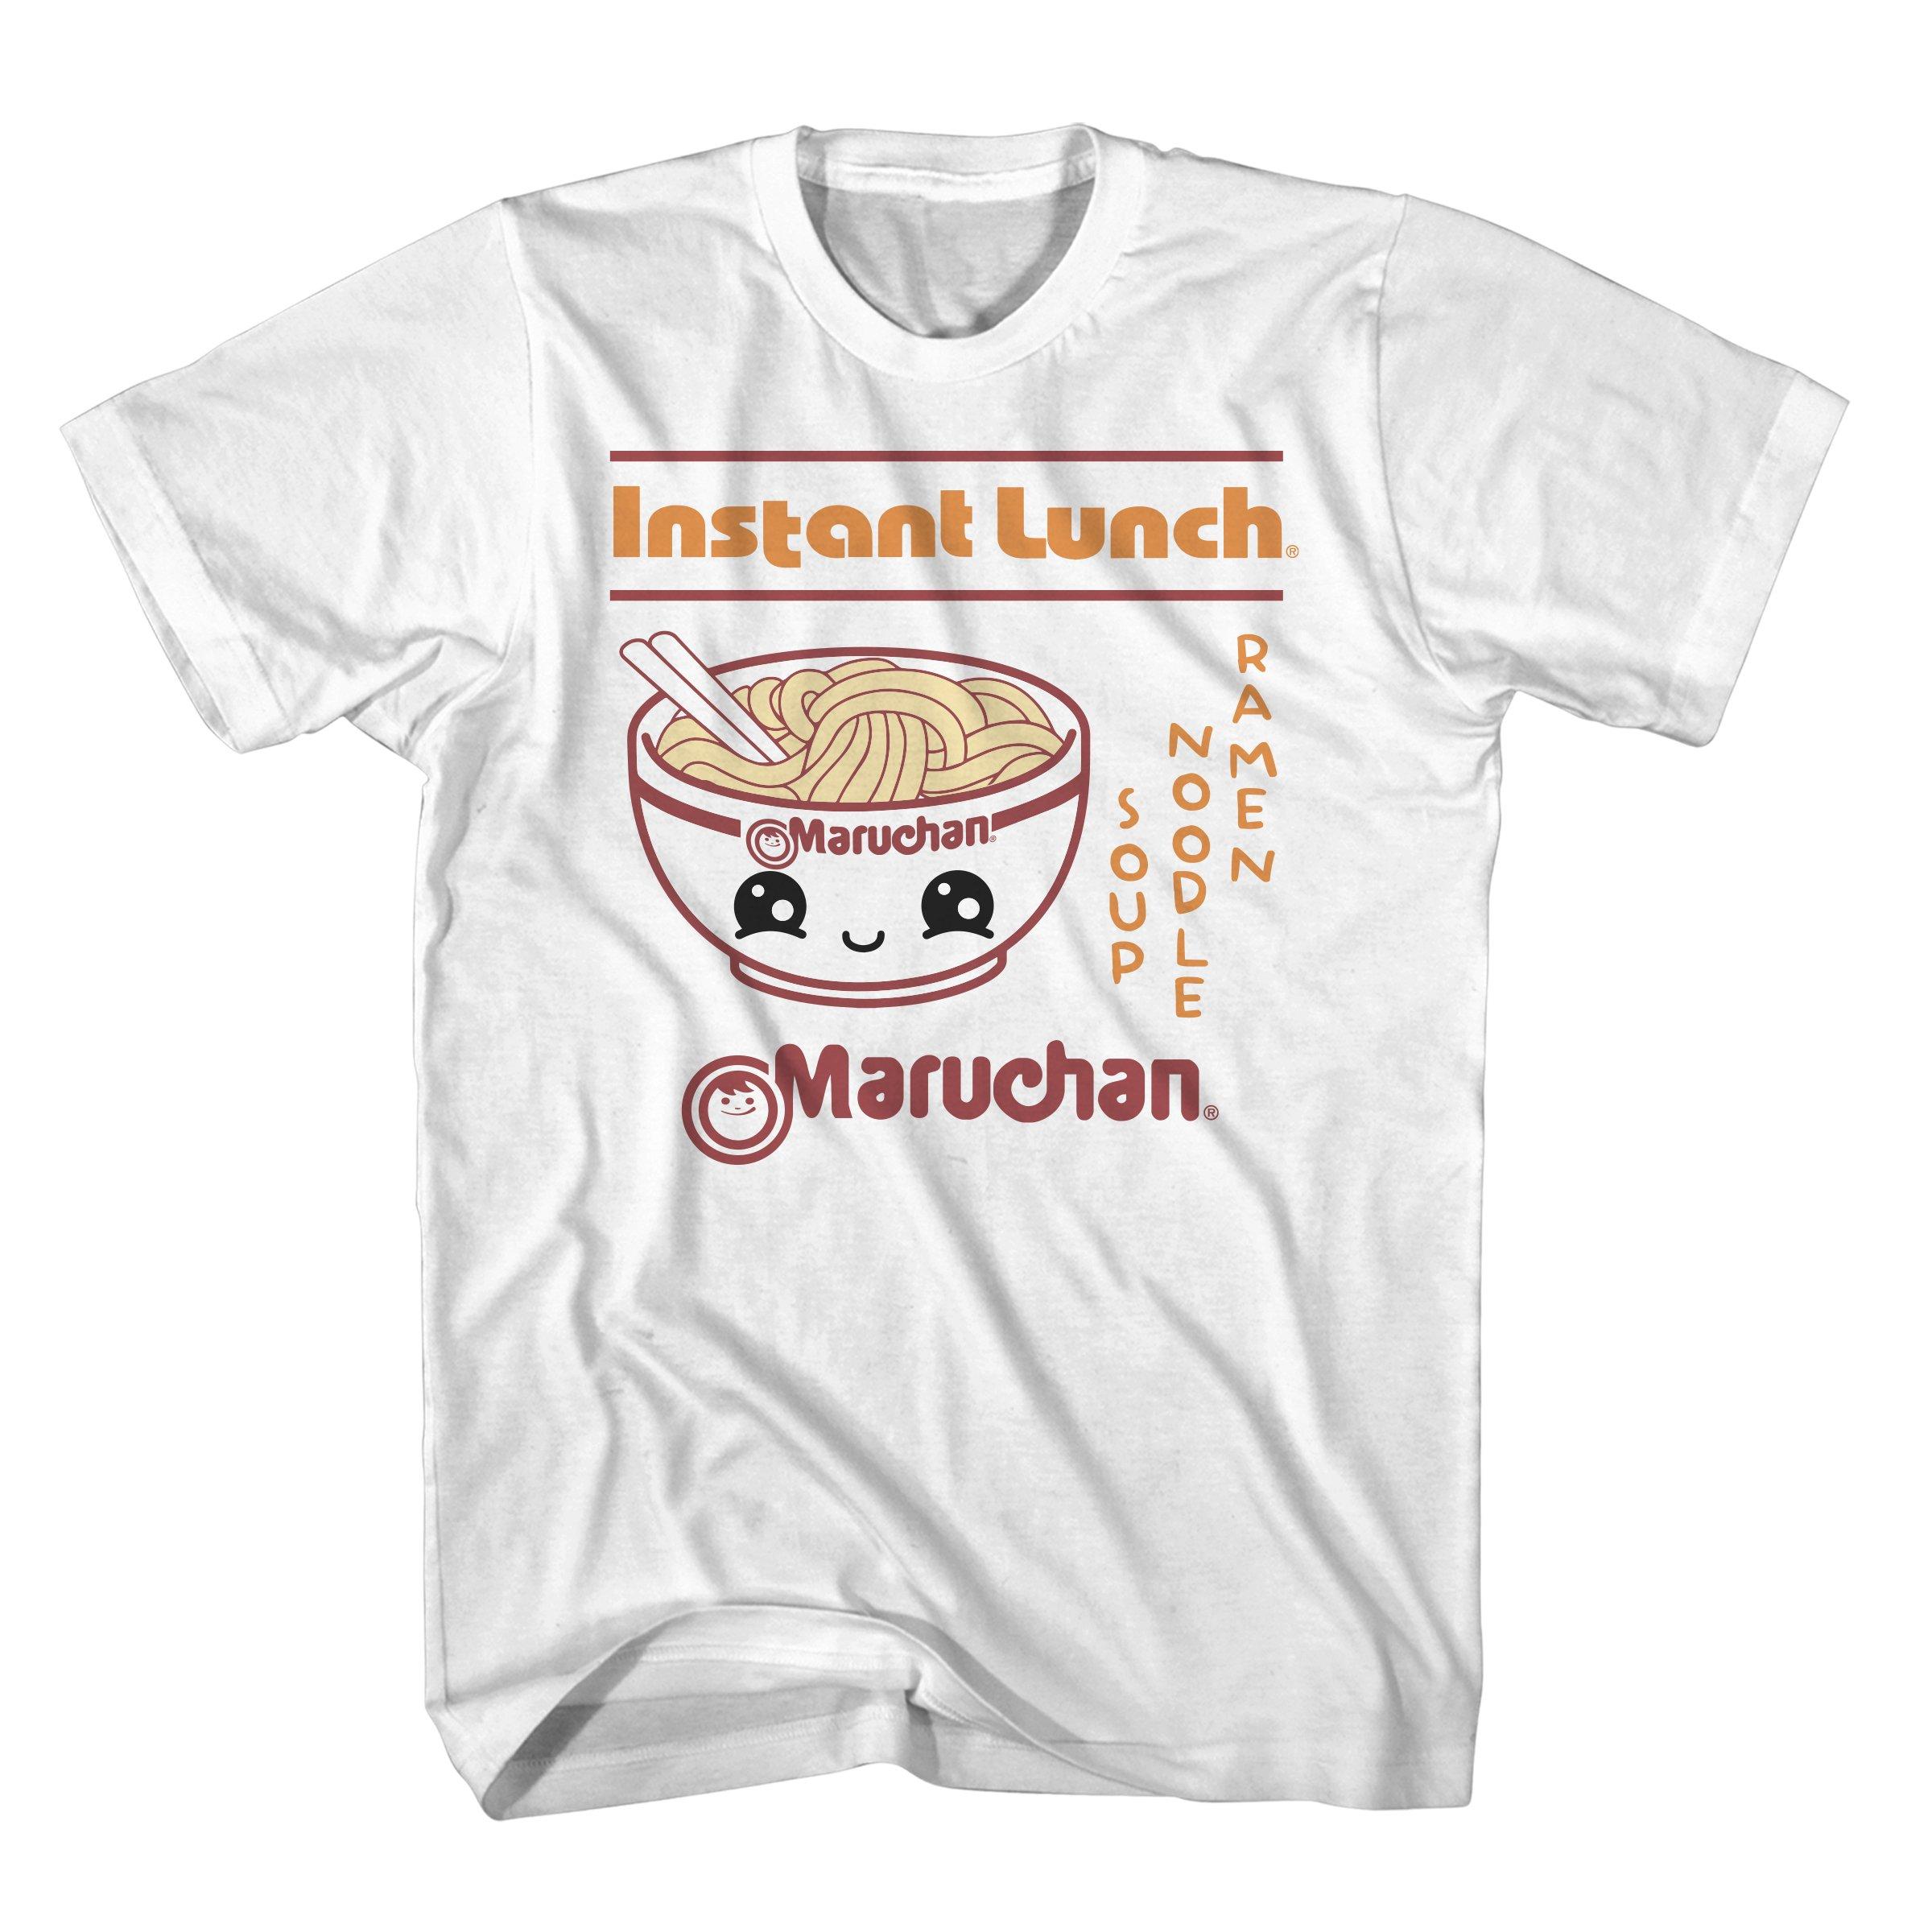 https://media.gamestop.com/i/gamestop/11205333/Maruchan-Instant-Lunch-Kawaii-Unisex-Short-Sleeve-T-Shirt